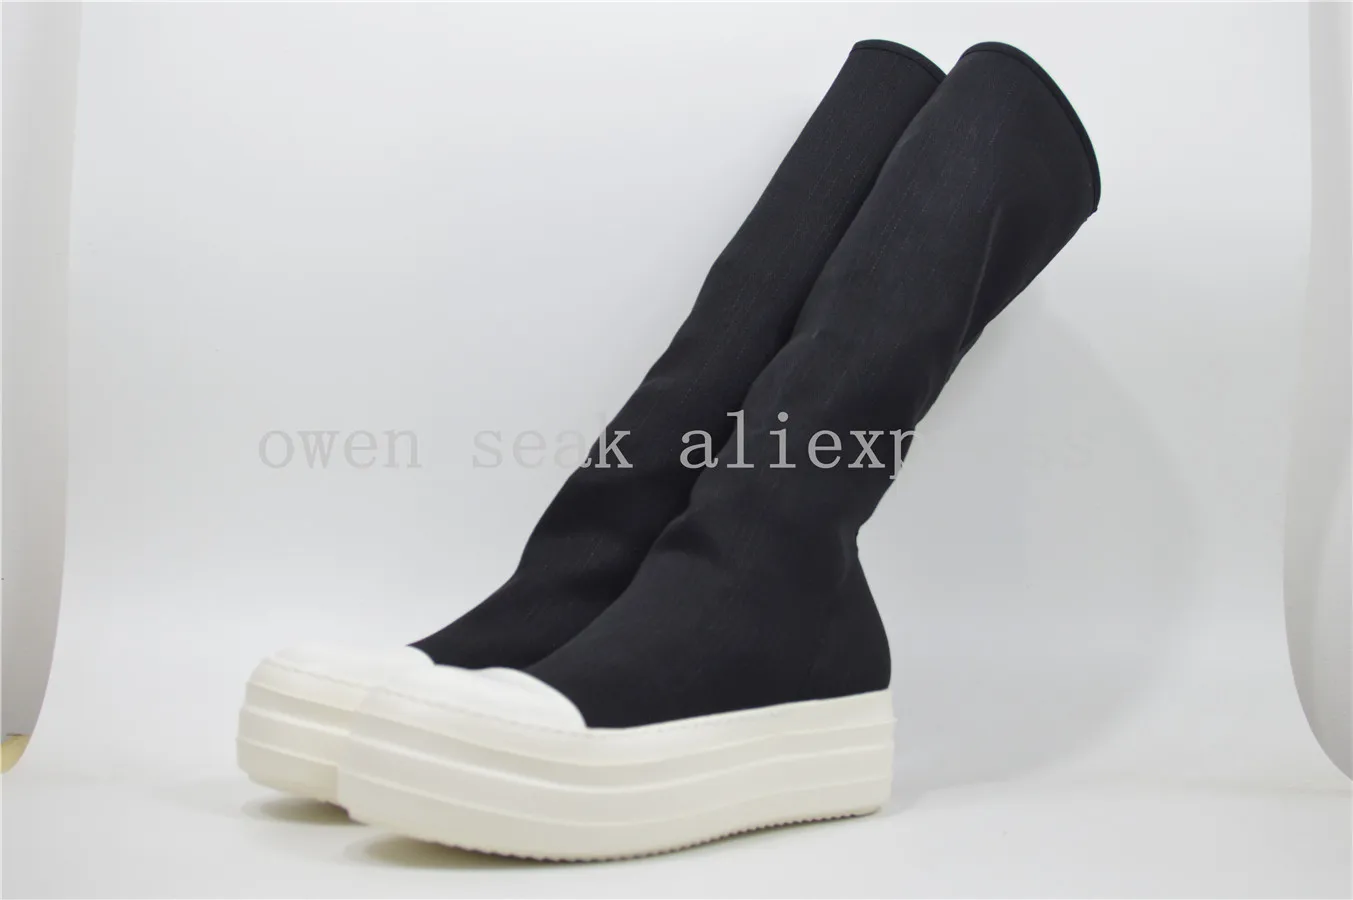 Obrázok /content/Owen-seak-mužov-kolená-vysoké-topánky-luxusné-3-260588.jpeg